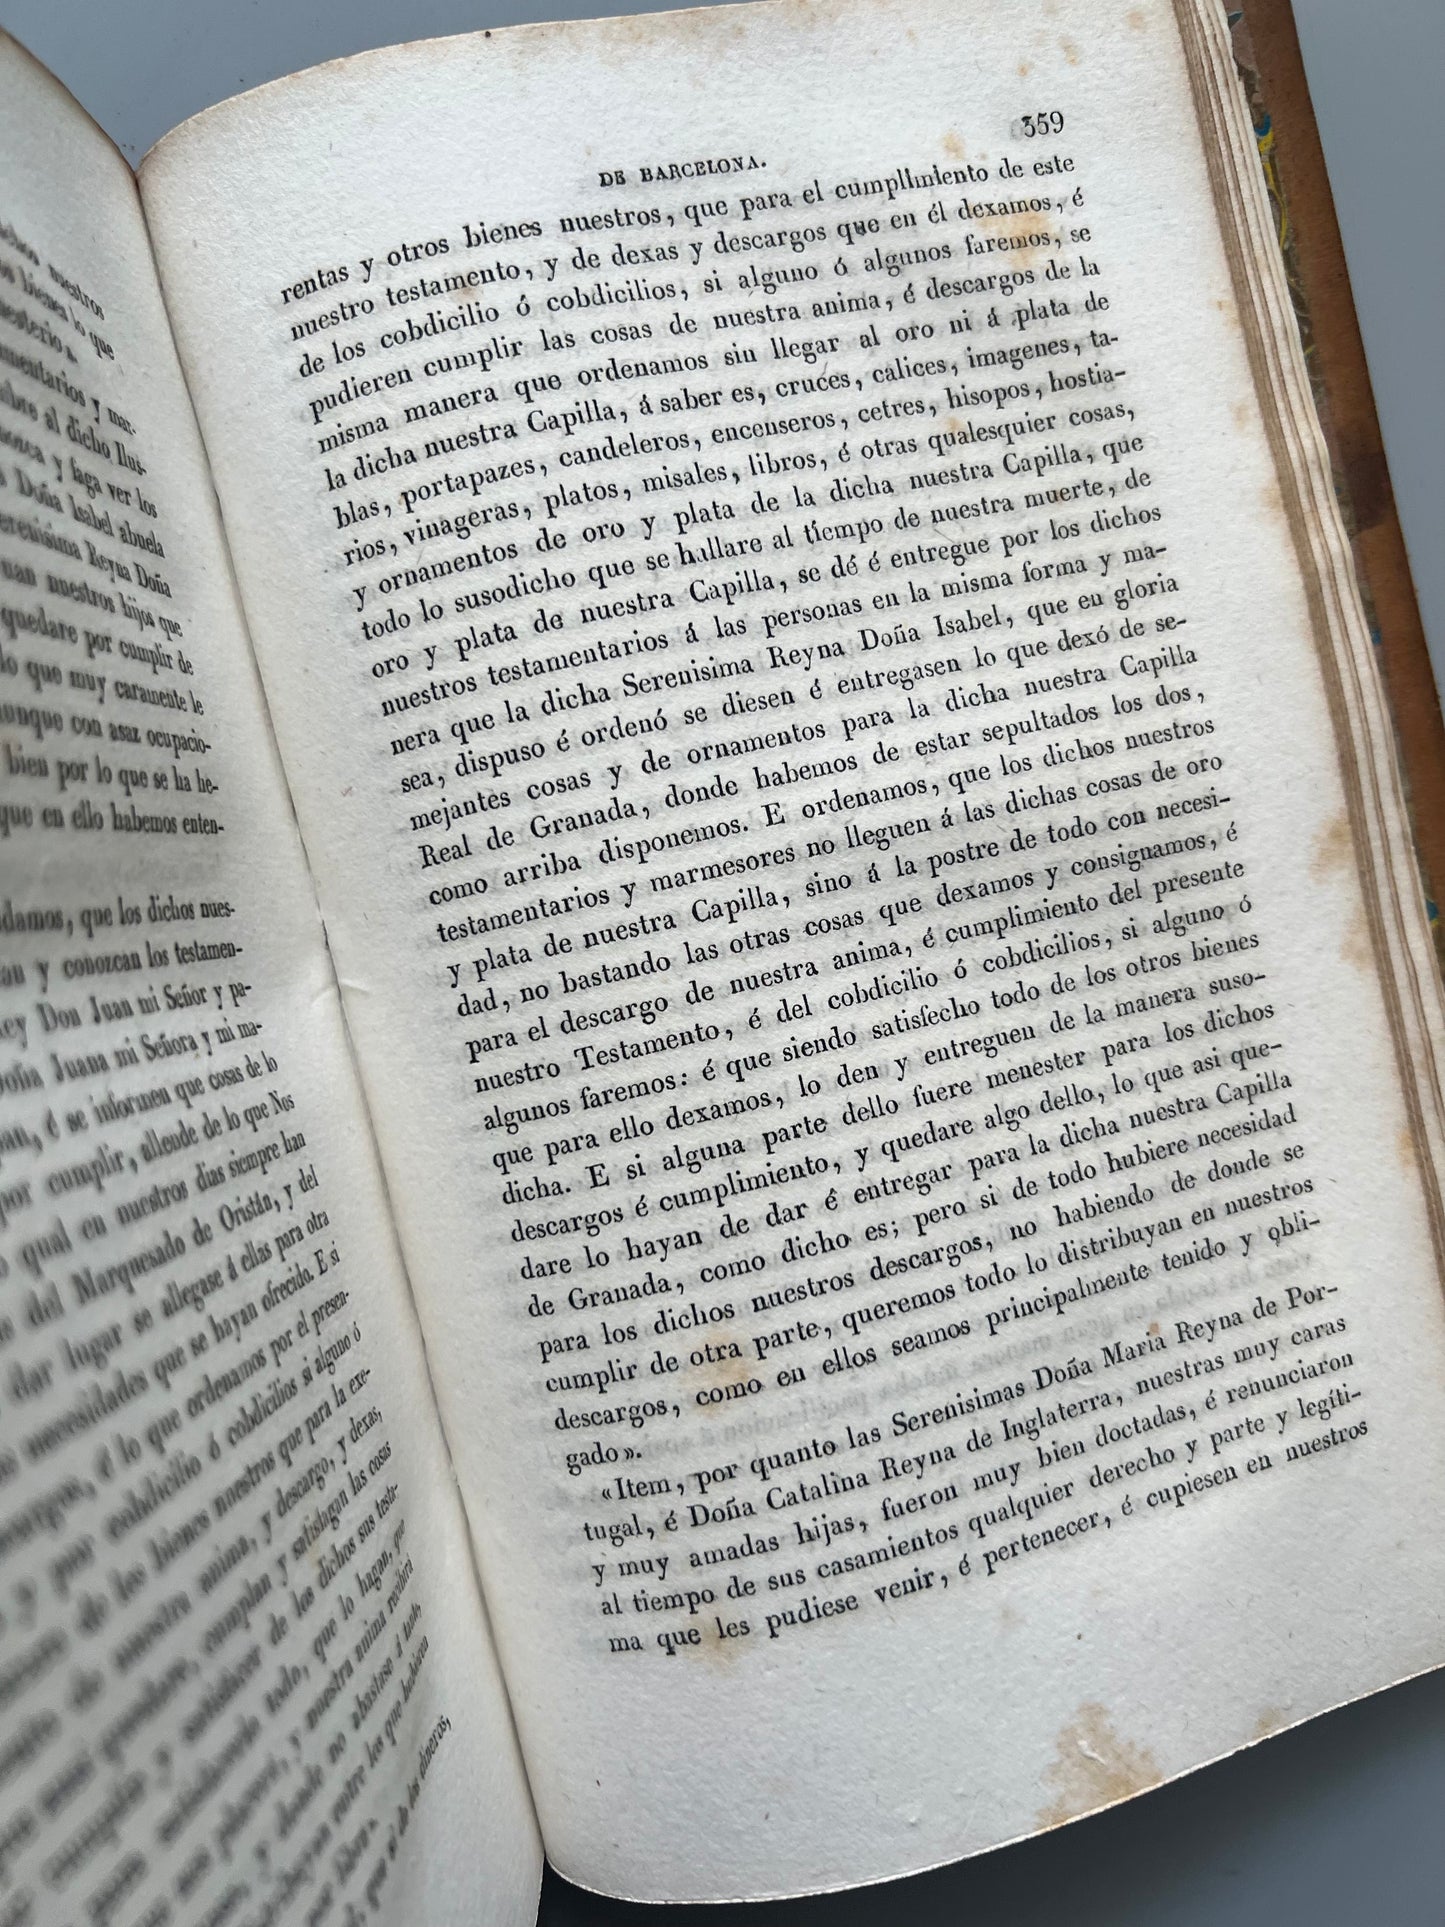 Los condes de Barcelona vindicados, Próspero de Bofarull y Mascaró - Imprenta de J. Oliveres y Monmany, 1836